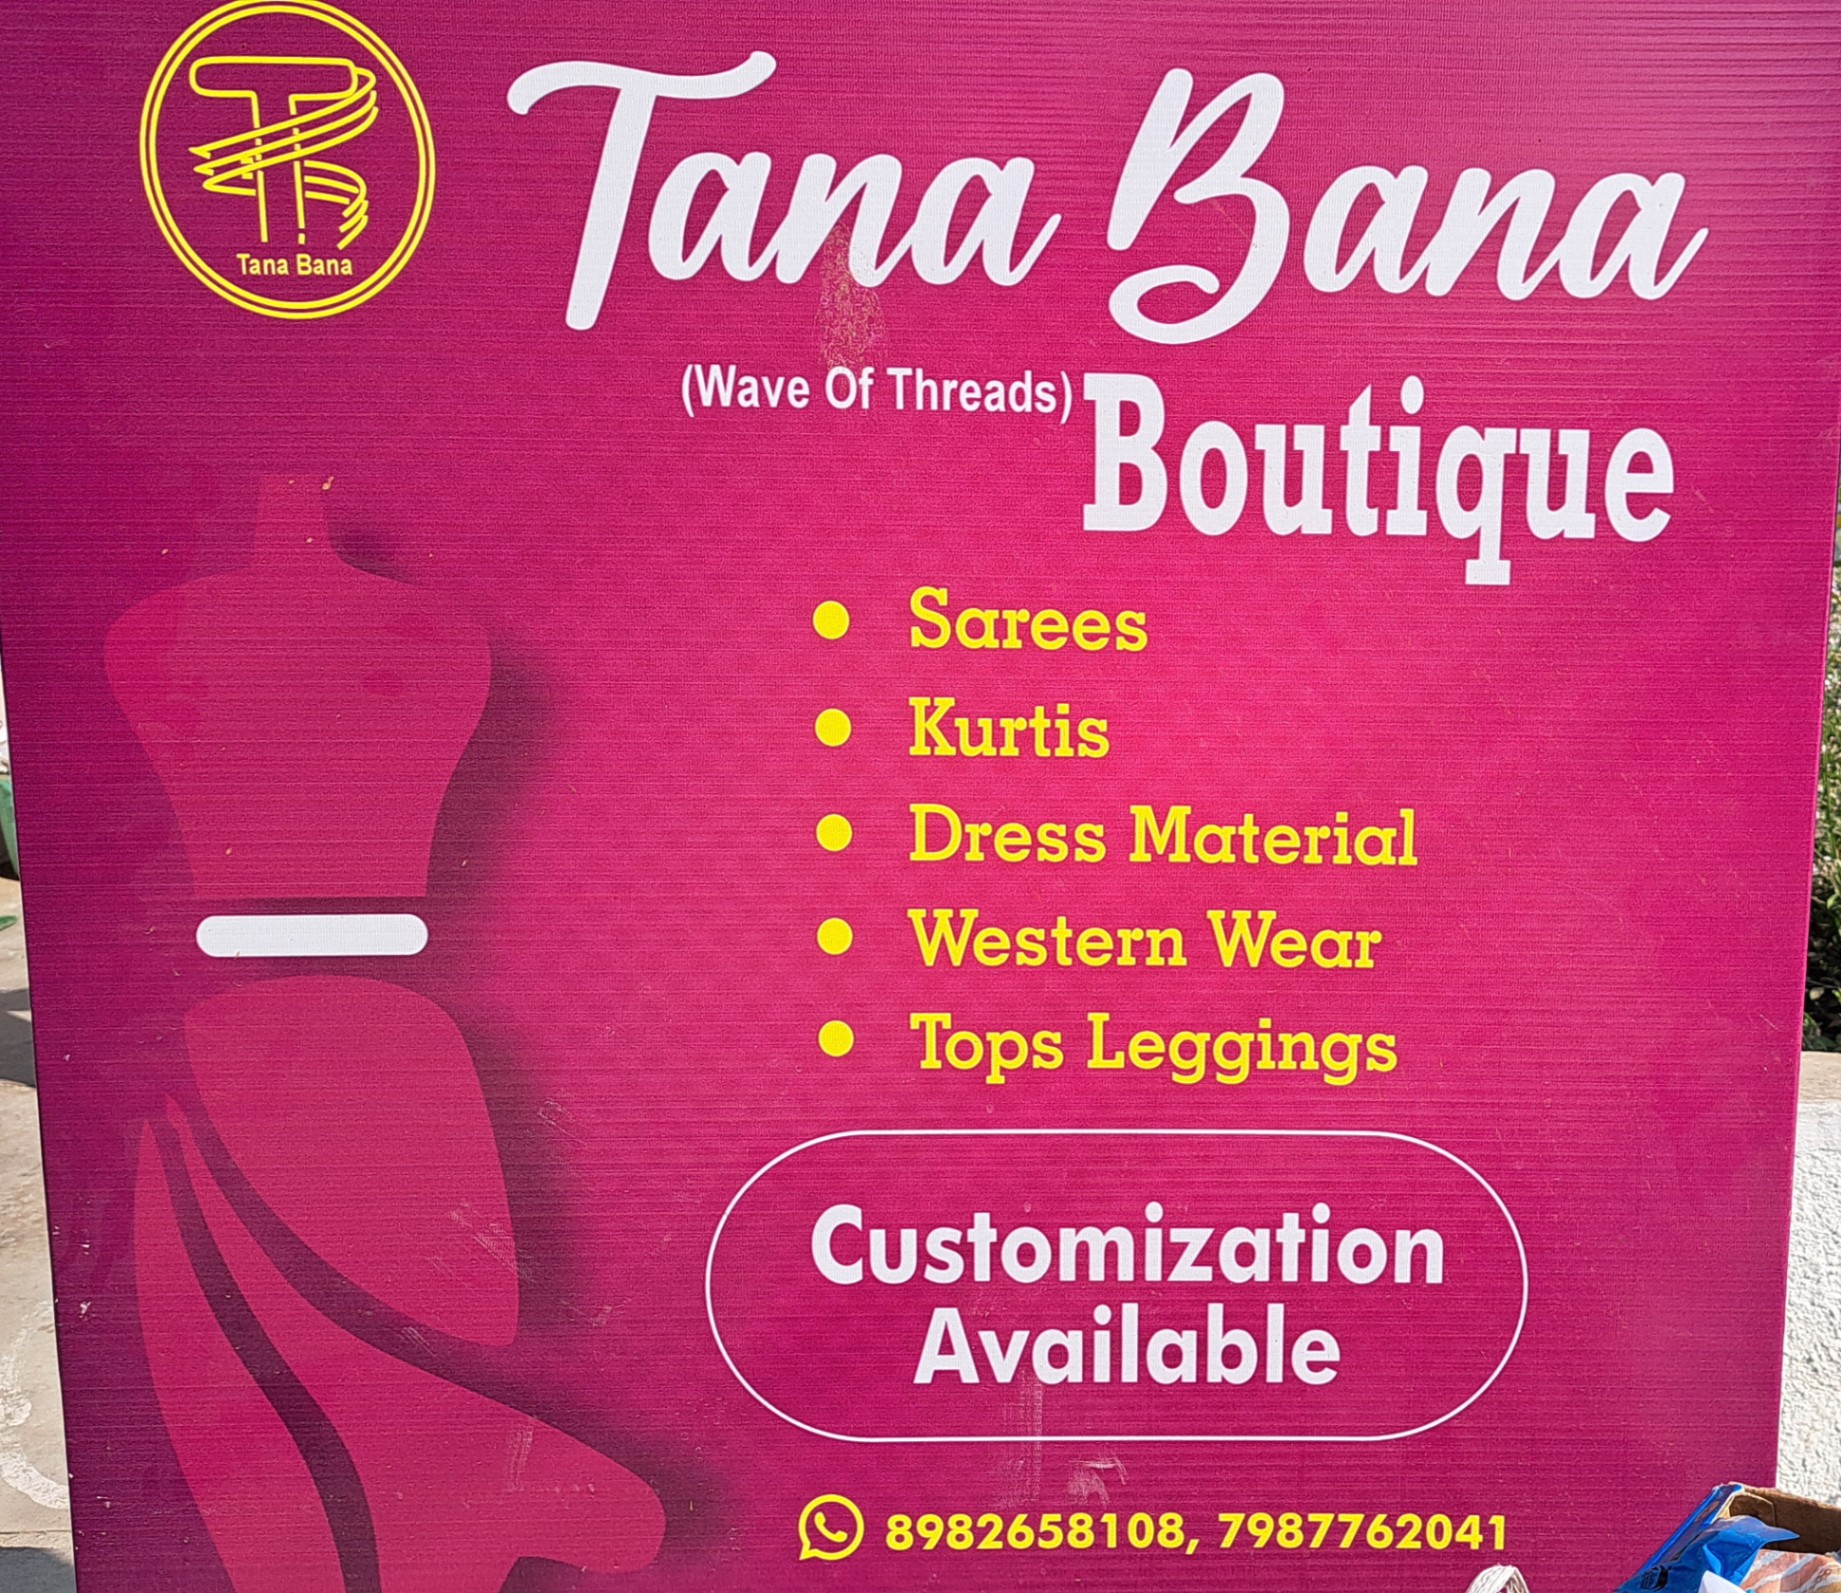 Dress sets, Dresses & Skirts, Fan Gear, Ghagra Choli, Inner wear on sale